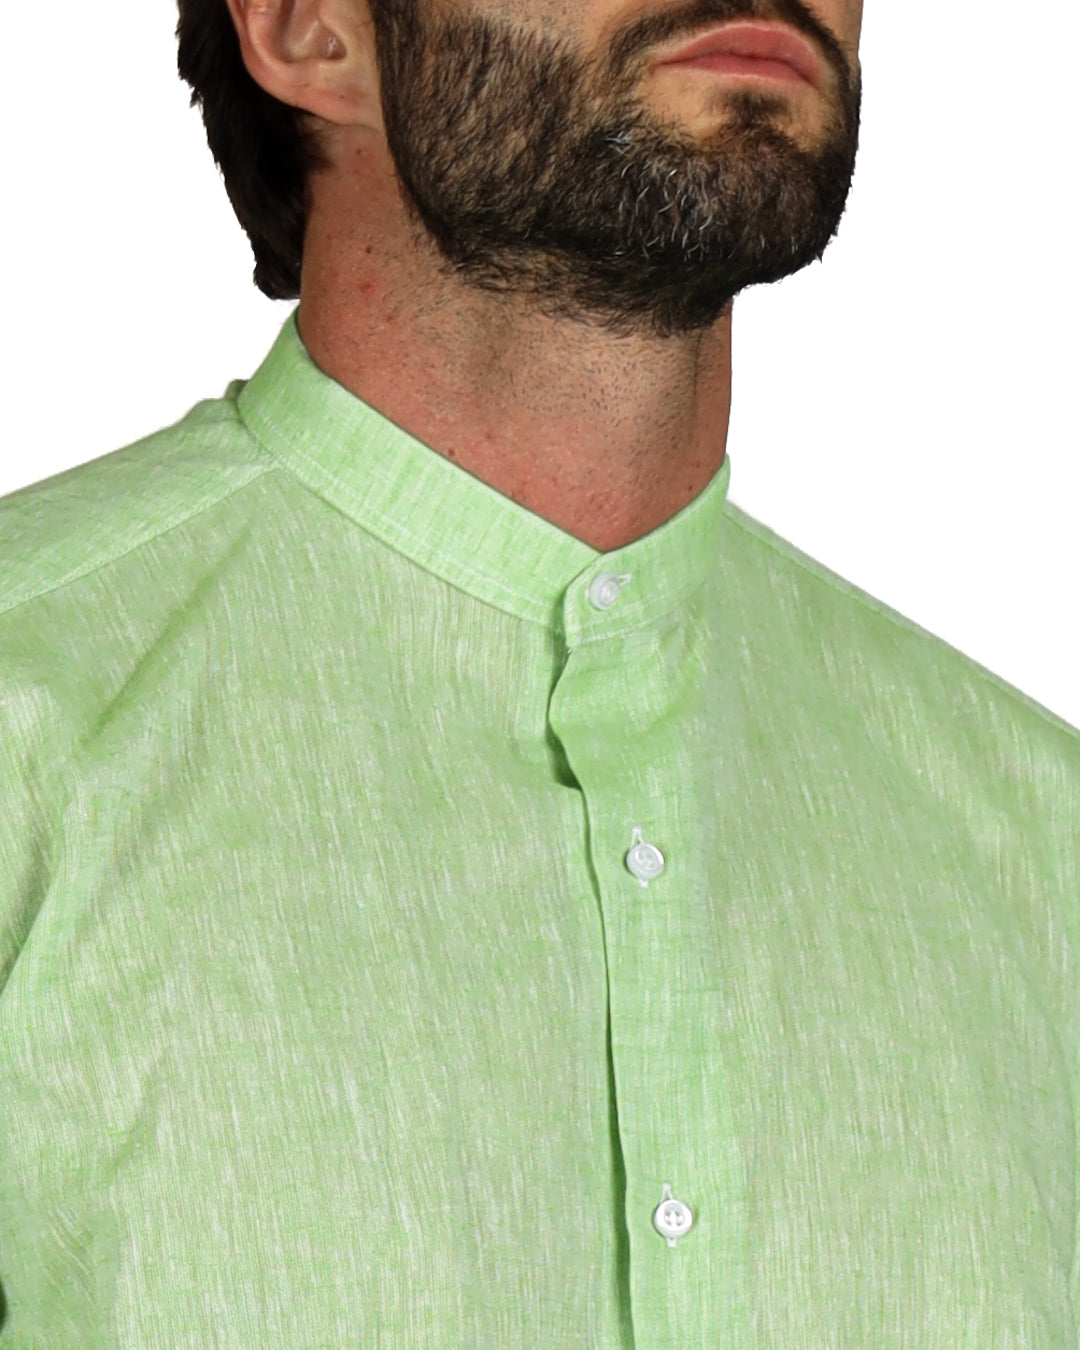 Positano - Apple green linen Korean shirt